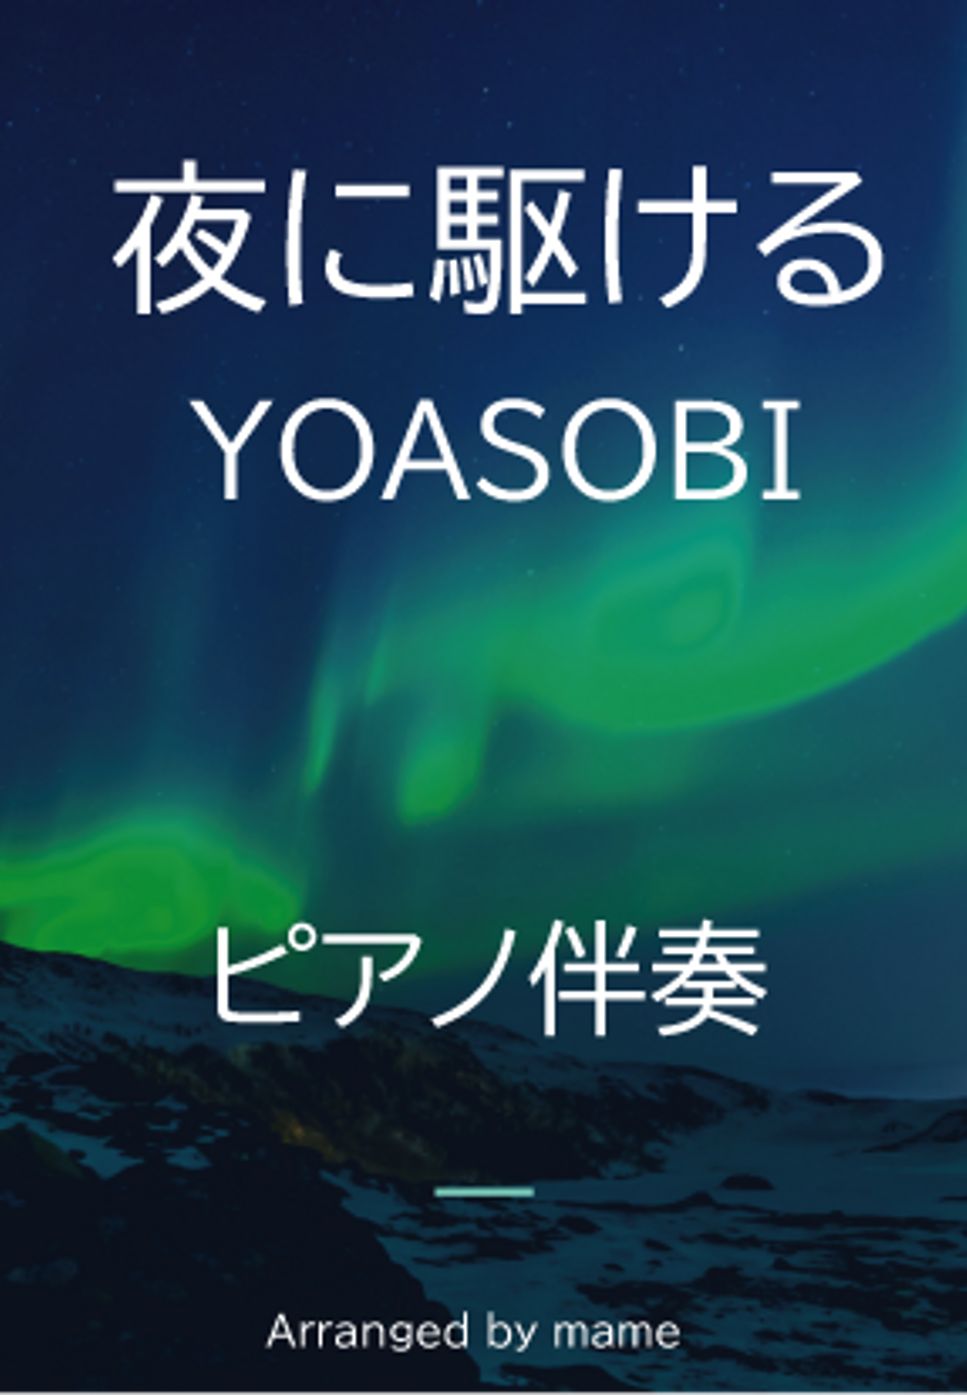 YOASOBI - 夜に駆ける（ピアノ伴奏） by mame